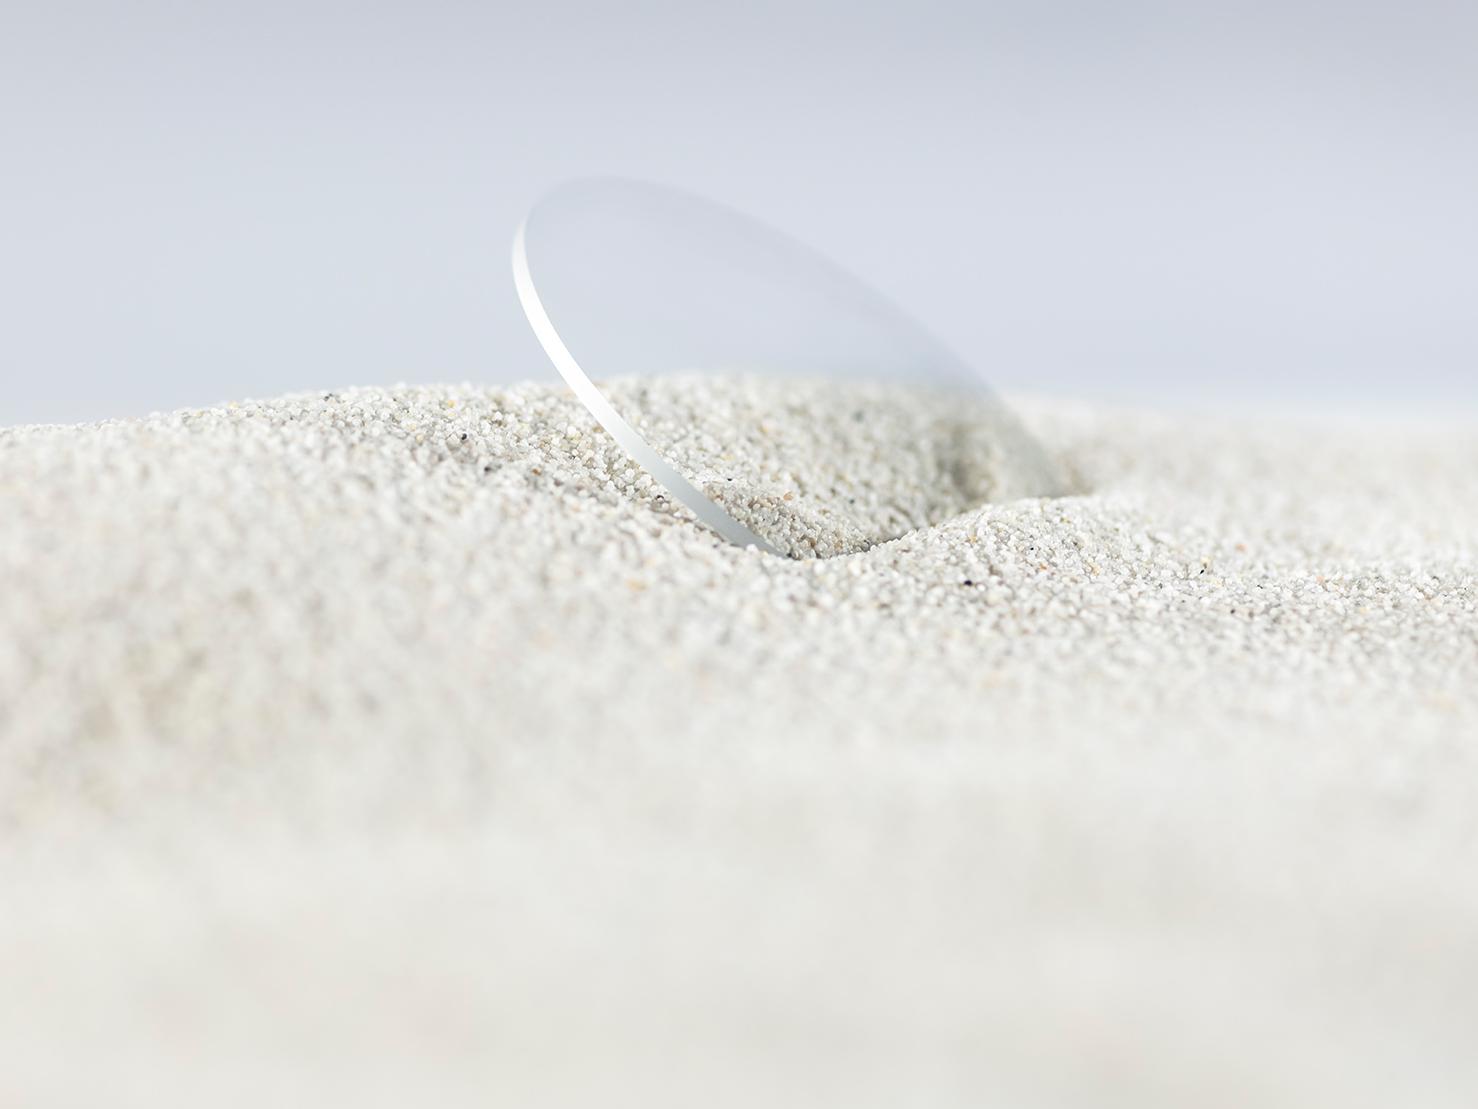 Lente ZEISS com revestimento durável coberta por areia grossa mas sem apresentar riscos.